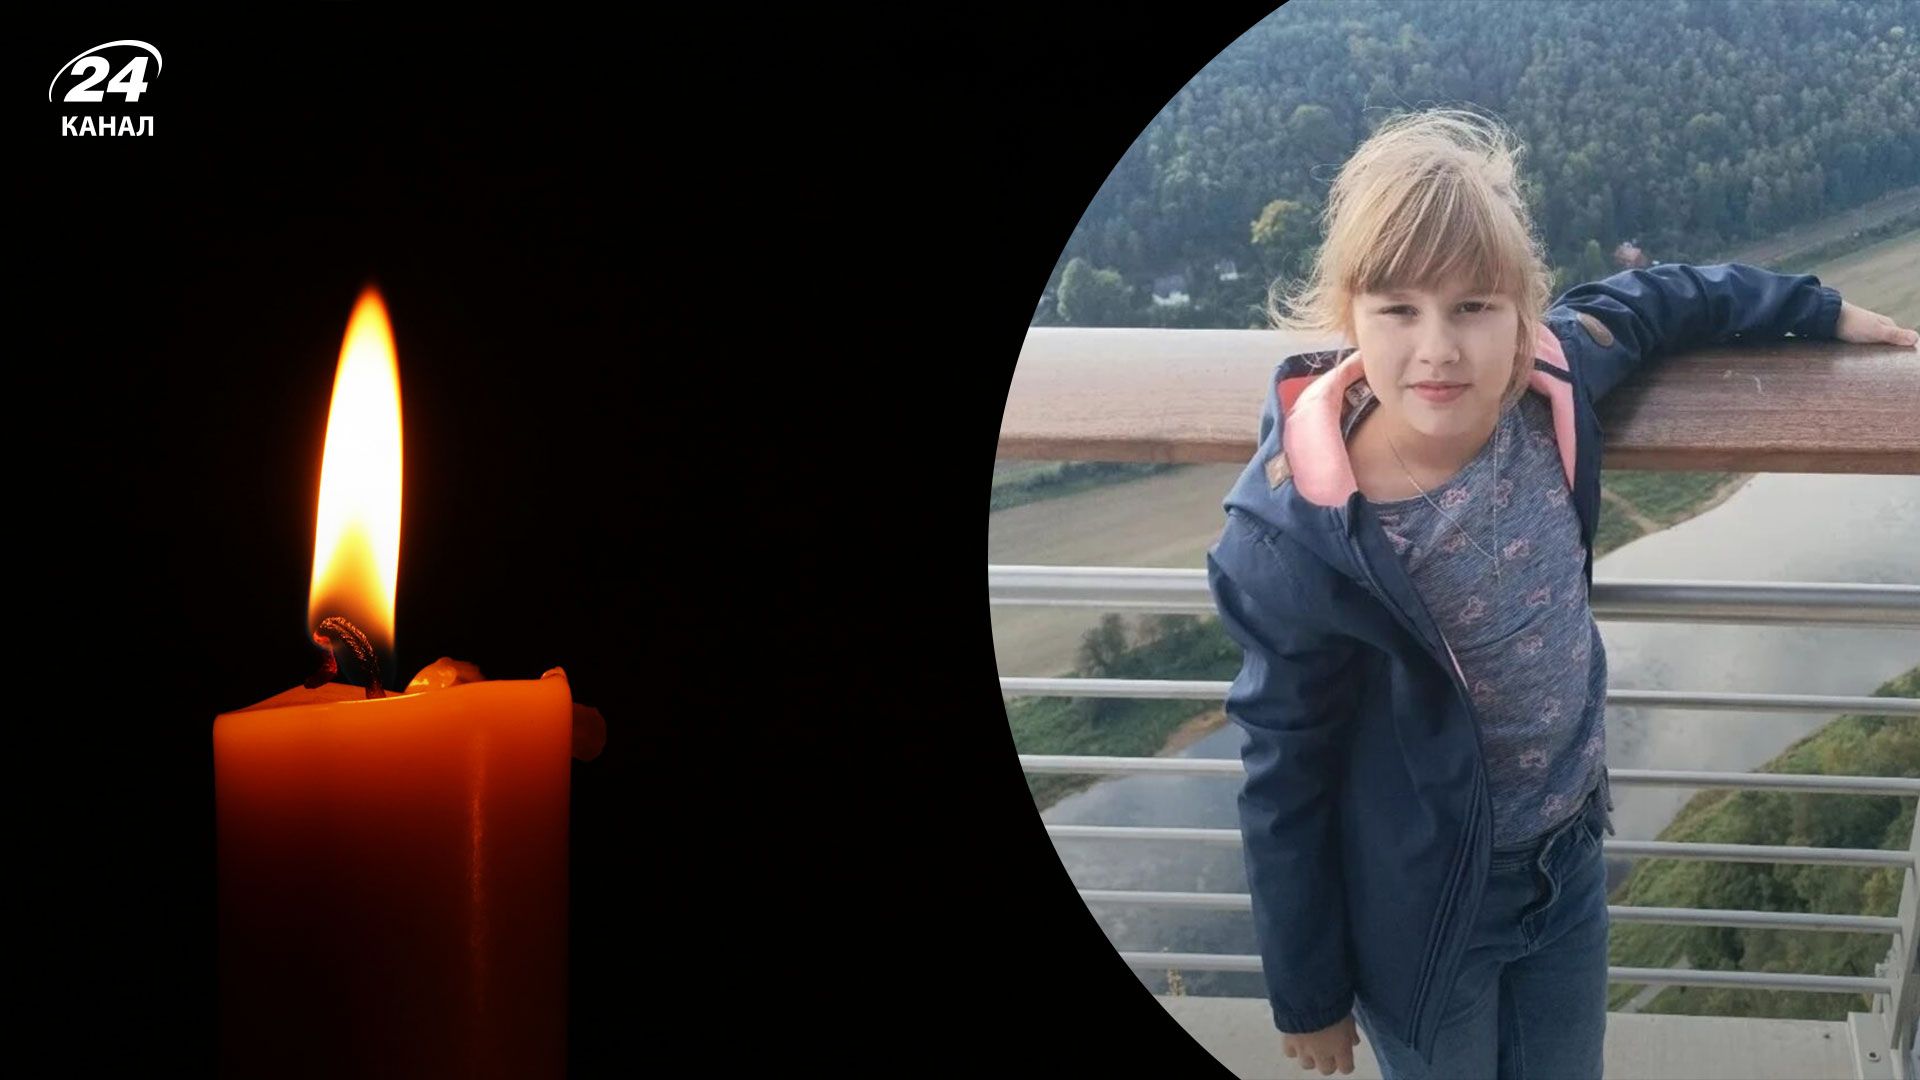 Полиция подтвердила, что пропавшую в Германии 9-летнюю украинку нашли мертвой - 24 Канал